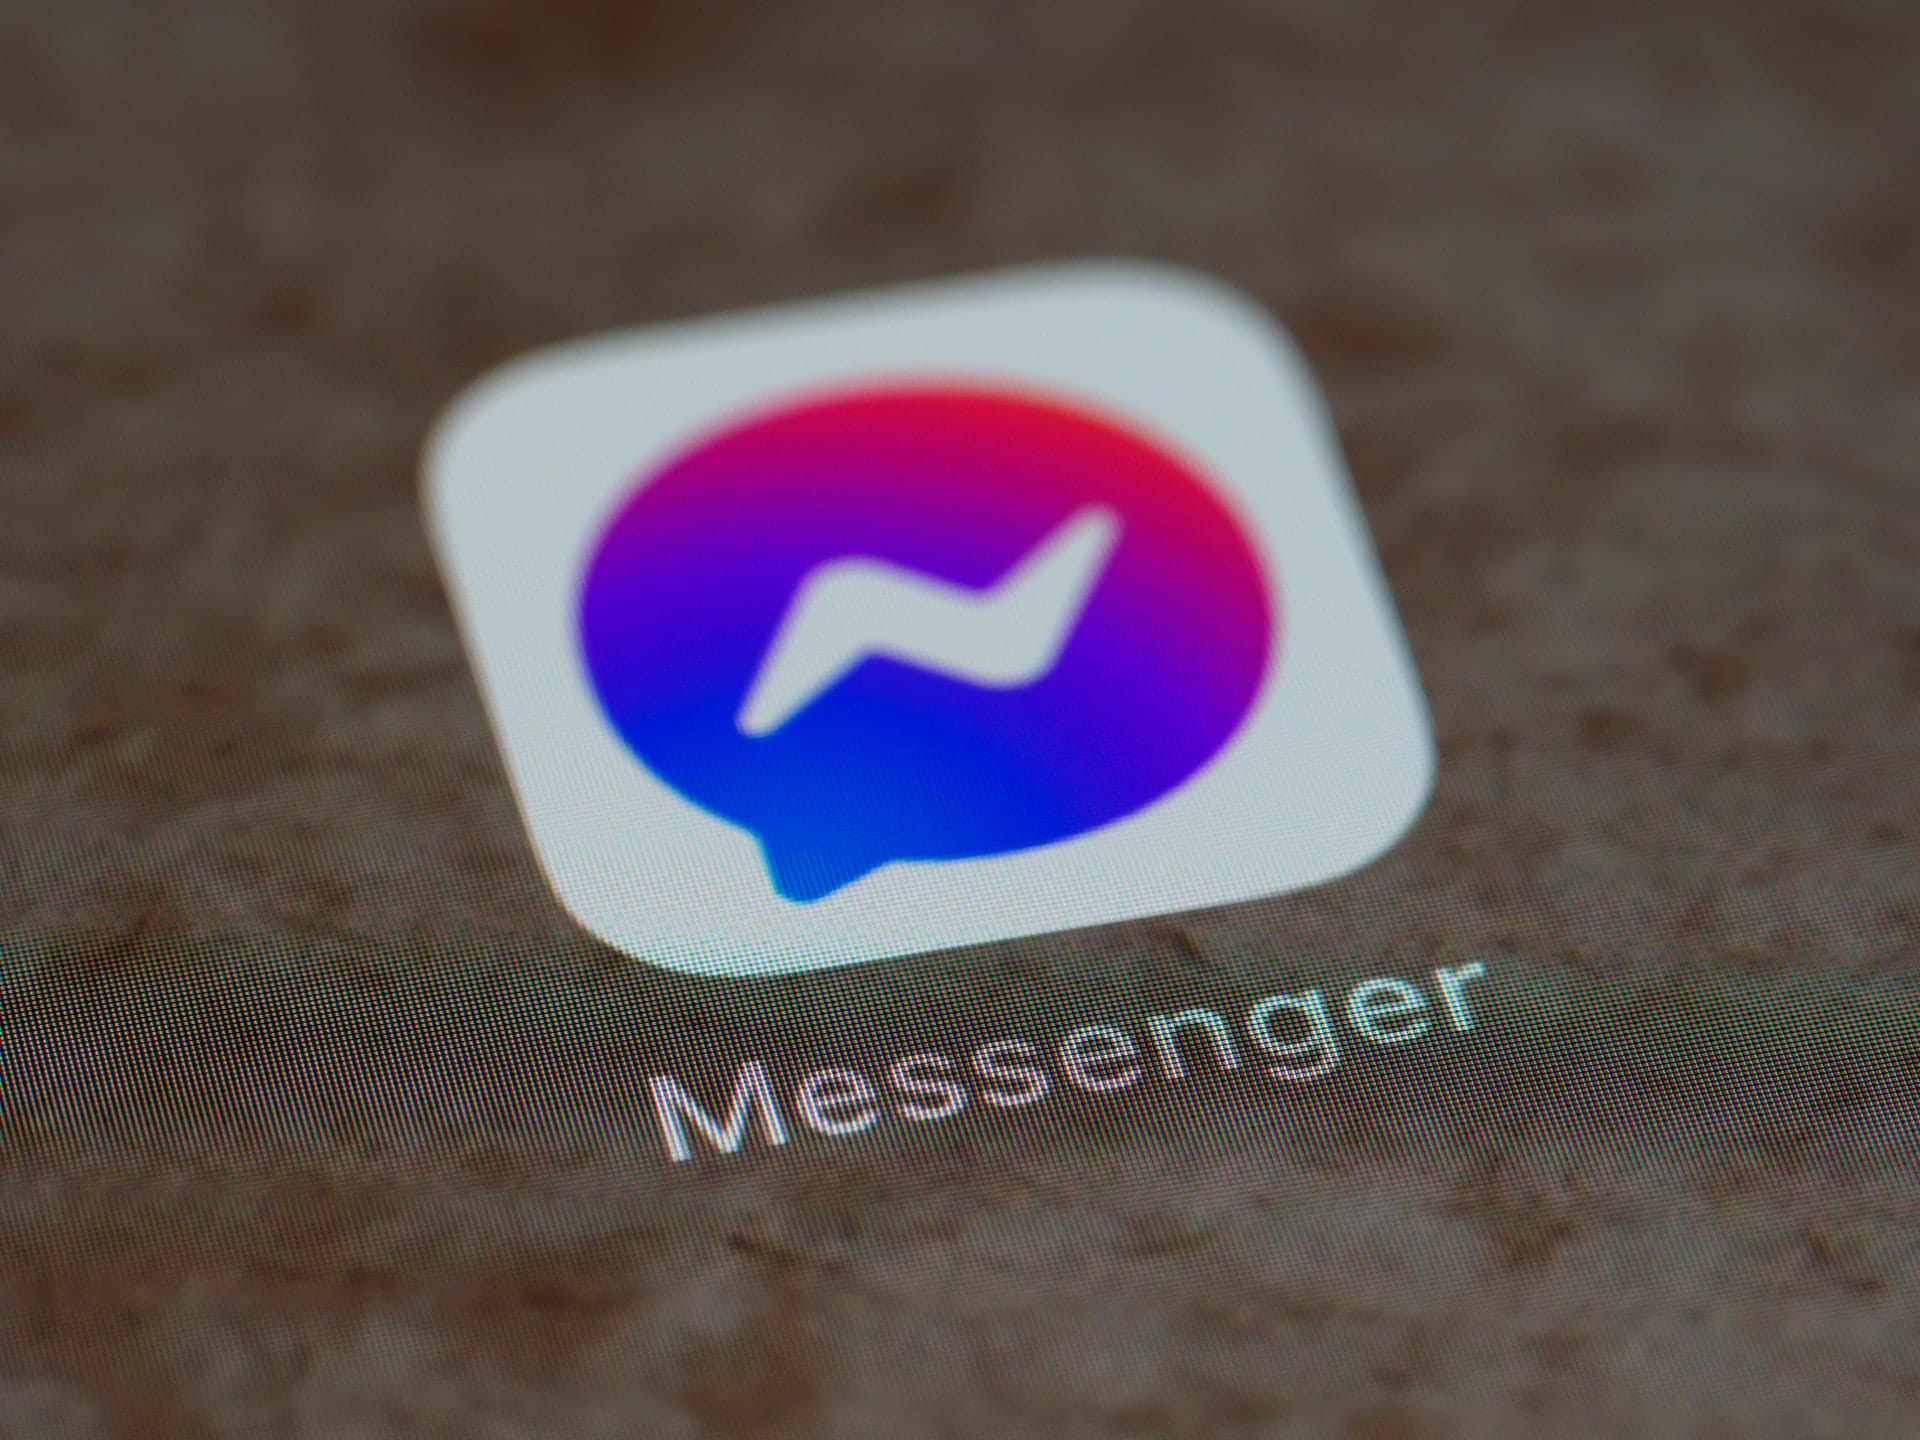 Messenger te avisará cuando alguien tome un pantallazo